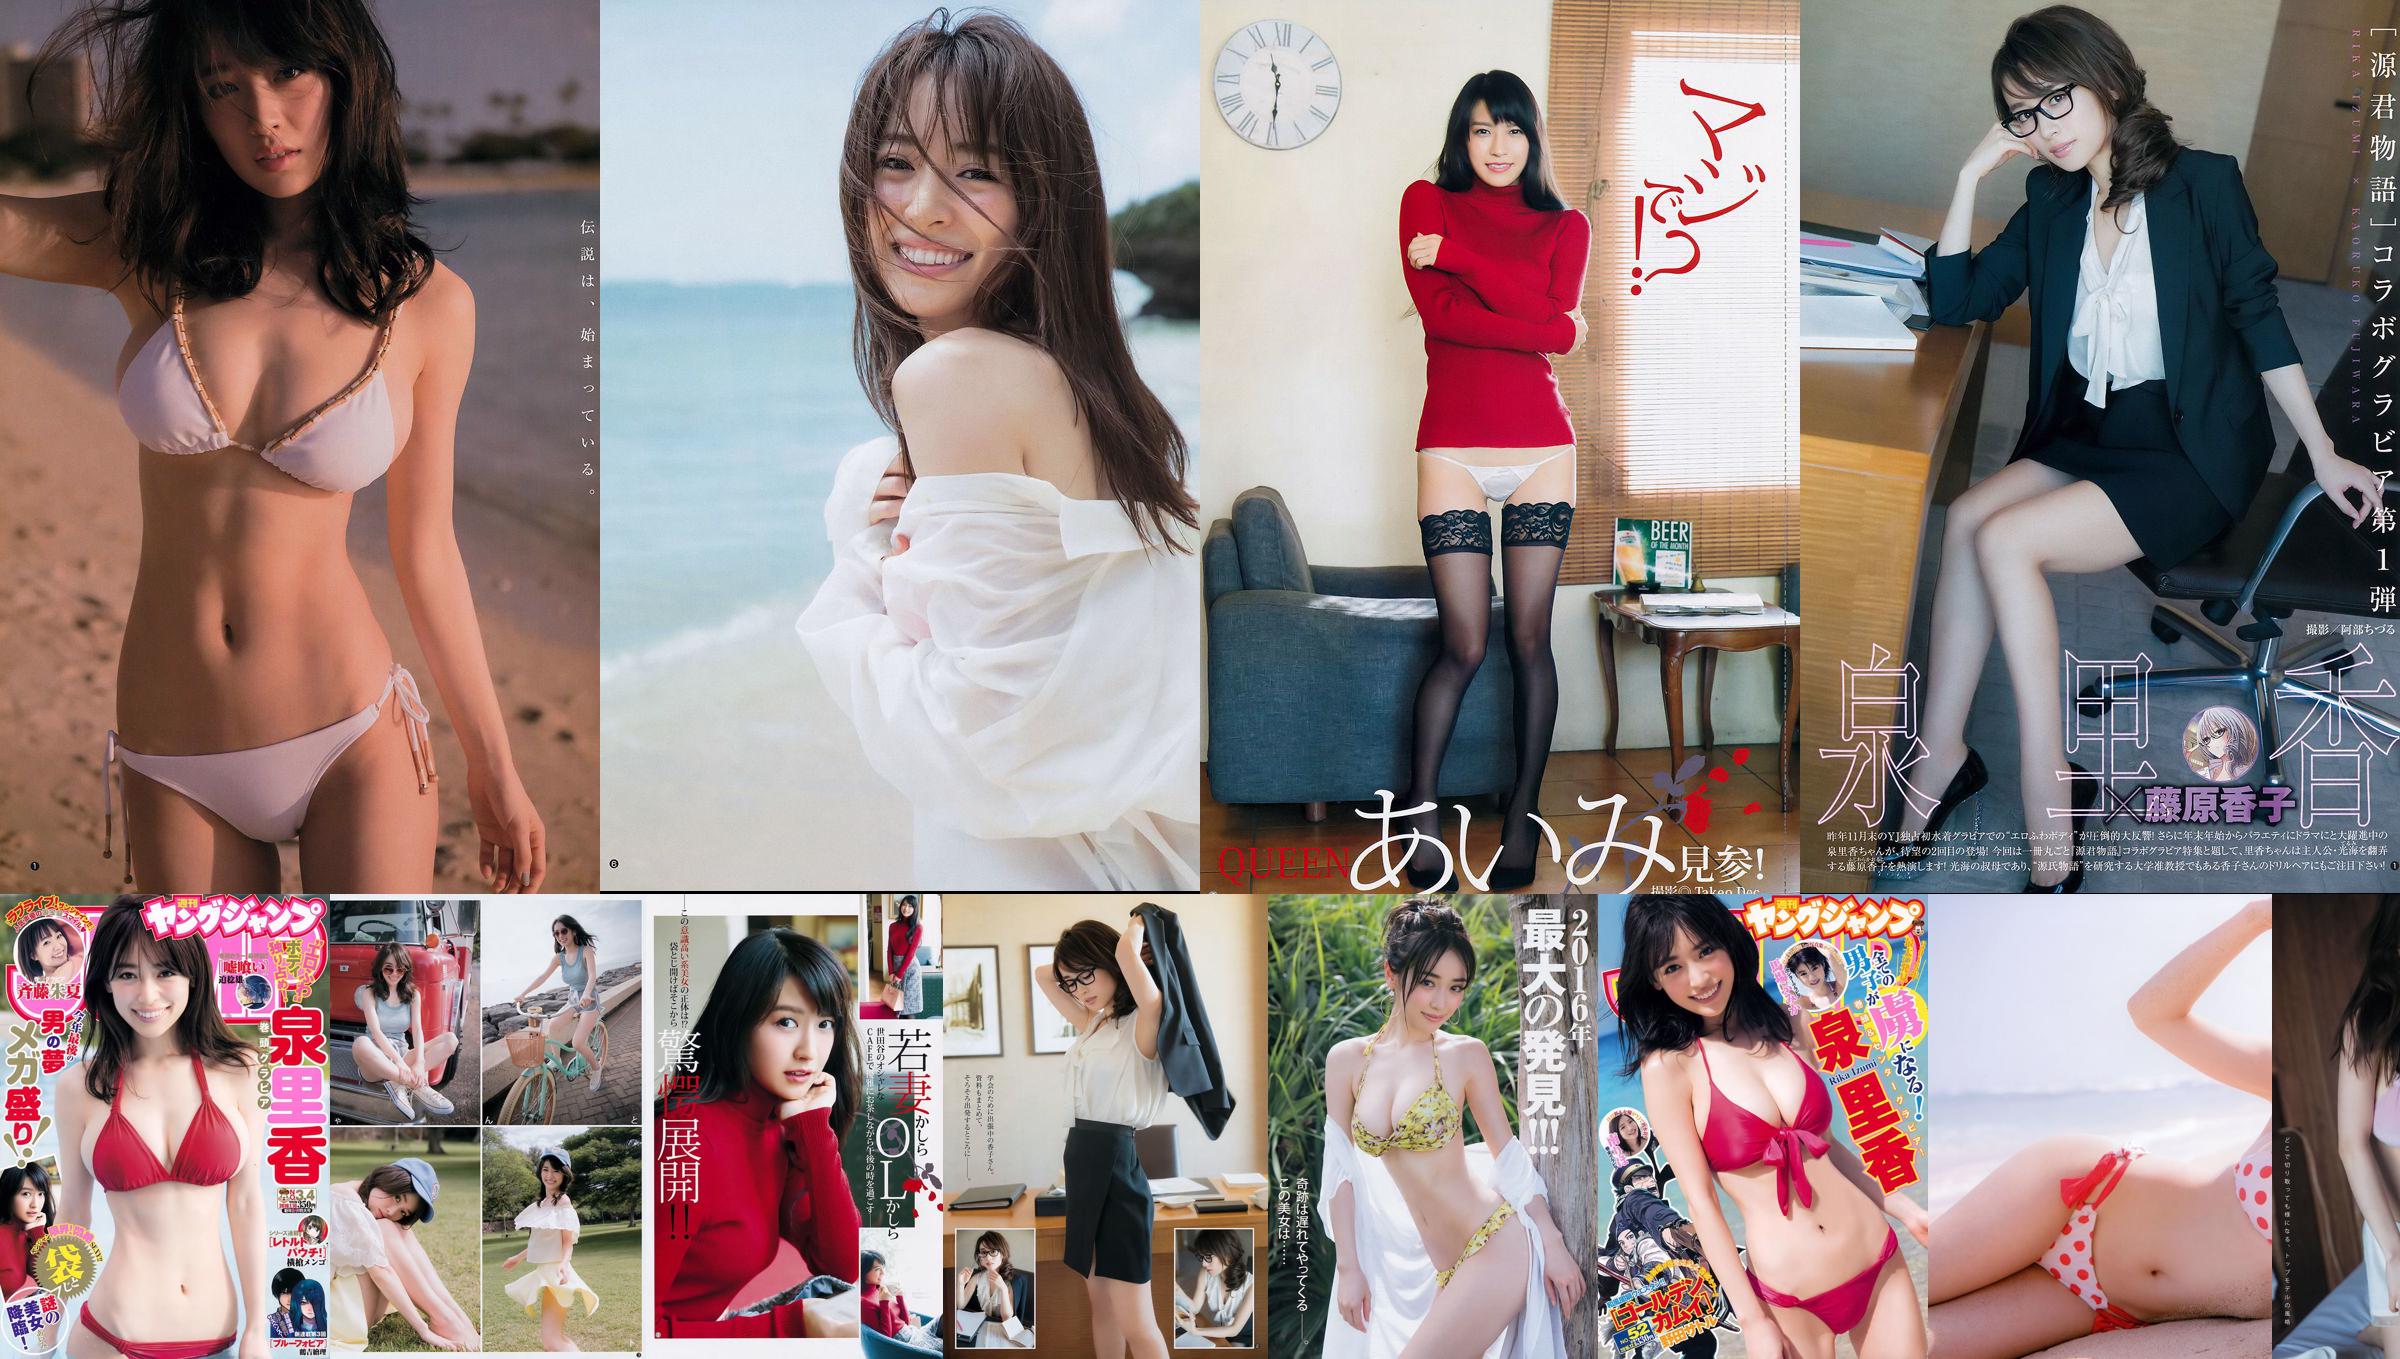 Tomomi Morisaki "Vẻ đẹp SEXY cao cấp và chuyến đi suối nước nóng" [YS-Web] Vol.821 No.b176d9 Trang 1